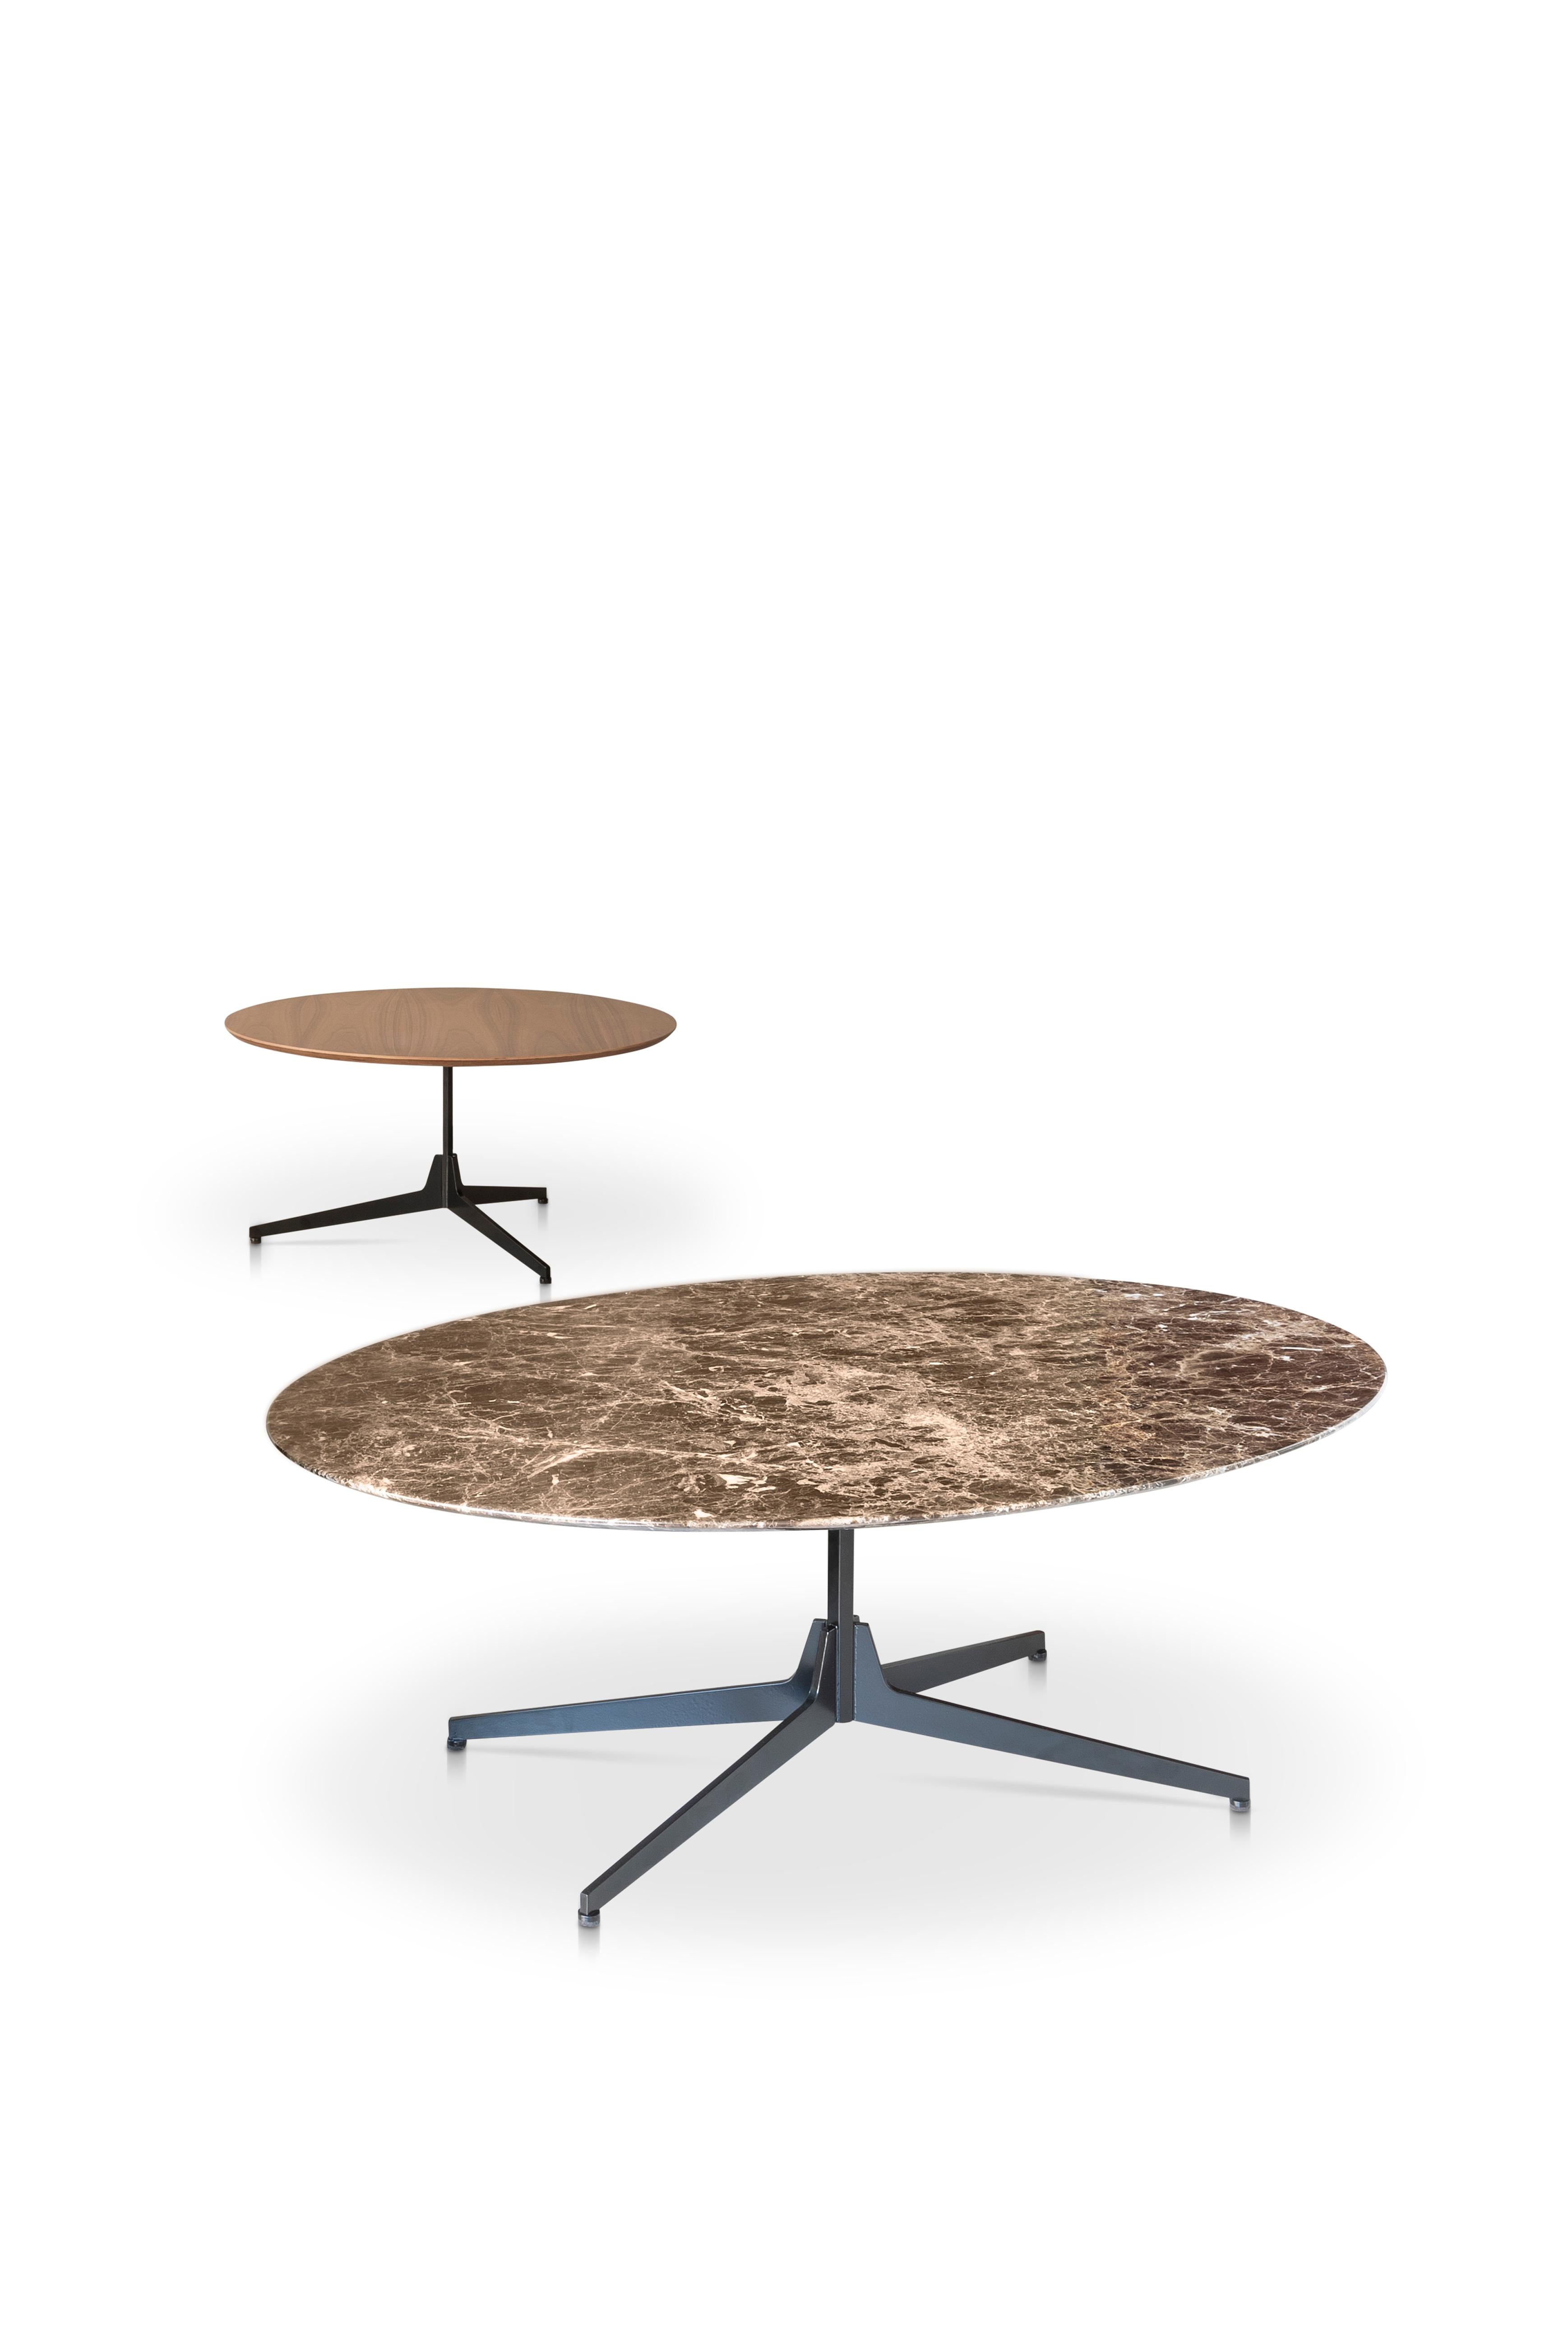 Moderne Table basse ovale Hexa avec plateau en marbre ancien Noir et base noire mate, Enzo Berti en vente